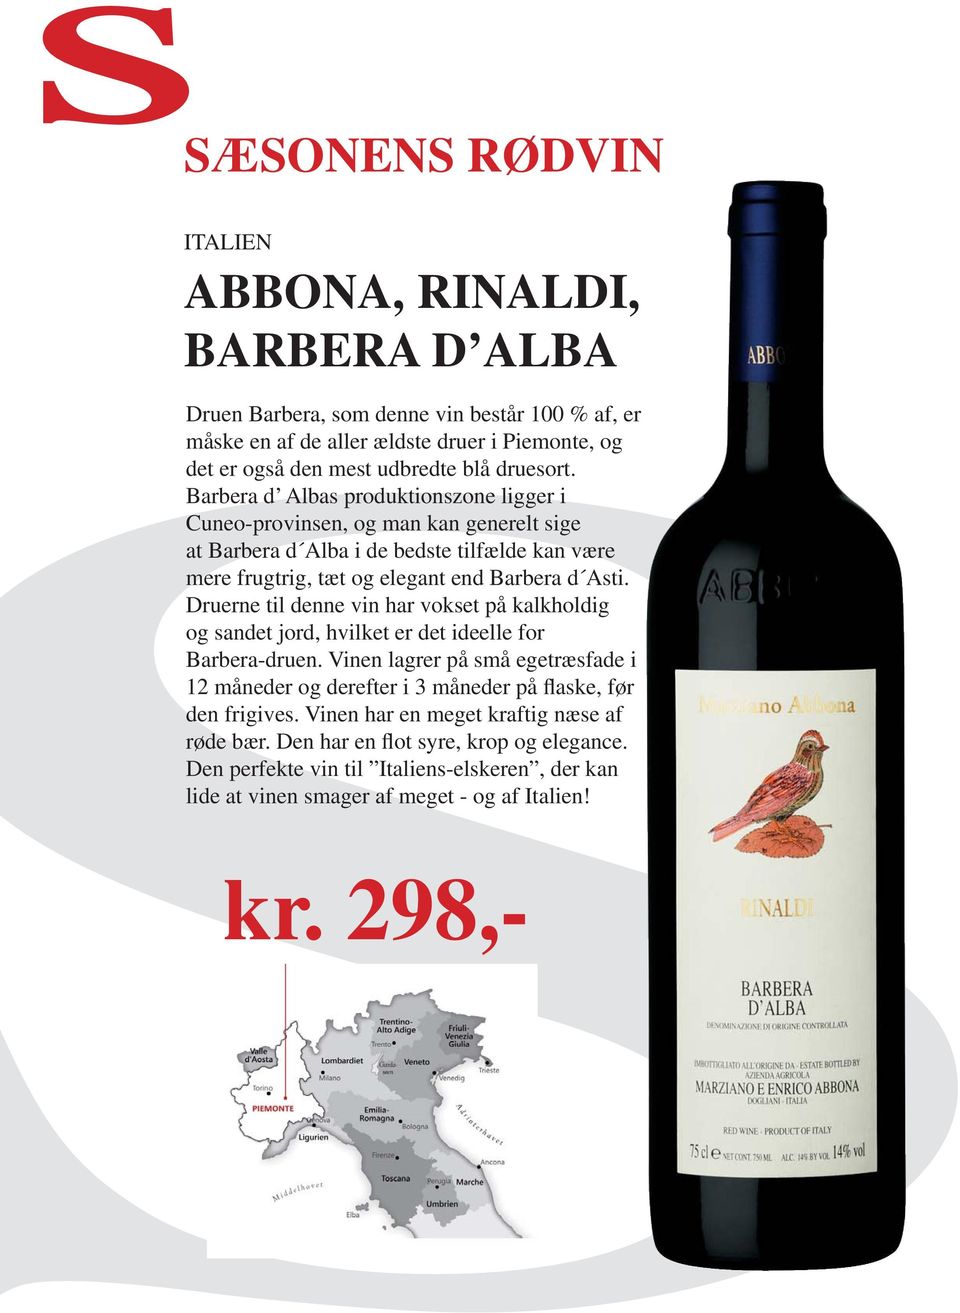 Druerne til denne vin har vokset på kalkholdig og sandet jord, hvilket er det ideelle for Barbera-druen.